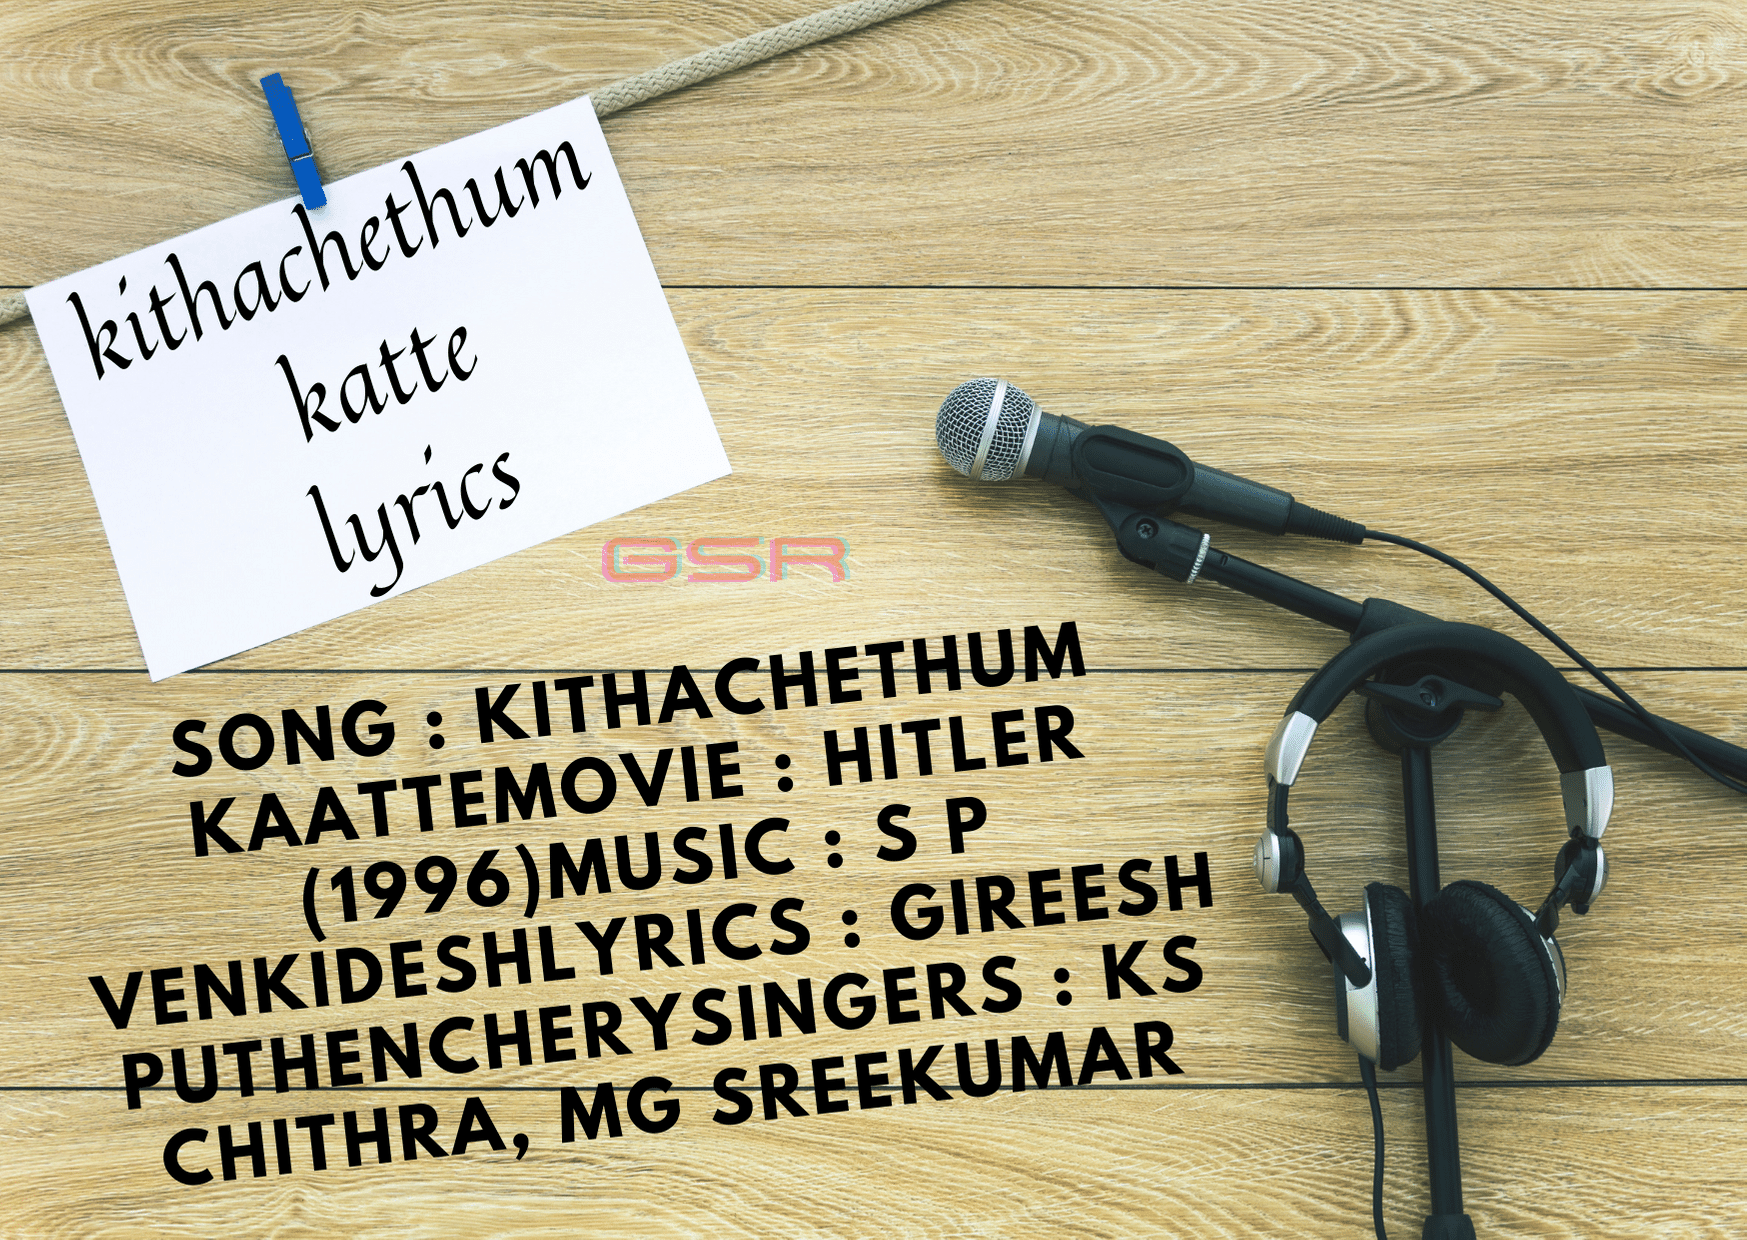 kithachethum katte lyrics kithachethum katte lyrics Song : Kithachethum Kaatte Movie : Hitler (1996) Music : S P Venkidesh Lyrics : Gireesh Puthenchery Singers : KS Chithra, MG Sreekumar [su_youtube url="https://youtu.be/vWrpDwHZsqo" autoplay="yes"] [su_heading]kithachethum katte lyrics In Malayalam[/su_heading] ഹേയ് അക്കരെ നിക്കണ ചക്കര മാവിലൊരിത്തിരി മുത്തണി മുന്തിരിമണിയുടെ കിങ്ങിണി കെട്ടിയ ചെറു ചെറു കനവുകൾ കൂടു തുറന്നു പറന്നിടുമൊരു ഞൊടി ചിറകടി പടഹവും ഇളകിയ ബഹളവും ഒരു ചെറു കലഹവും അതിലൊരു മധുരവും അതുവഴി ഇതുവഴി പലവഴി പരതിയും ഒടുവിലതലനുര ചിതറിയ പറവകളായ് കിതച്ചെത്തും കാറ്റേ കൊതിച്ചിപ്പൂങ്കാറ്റേ മണിത്തുമ്പപ്പൂവിൻ തേനും തായോ.. കിതച്ചെത്തും കാറ്റേ കൊതിച്ചിപ്പൂങ്കാറ്റേ ചിഞ്ചകച്ചക്കം ചക്കം ചിഞ്ചകച്ചക്കം മണിത്തുമ്പപ്പൂവിൻ തേനും തായോ ചിഞ്ചകച്ചക്കം ചക്കം ചിഞ്ചകച്ചക്കം ഓലോലം തുടിച്ചു പാടാം ഓലക്കം മടിച്ചൊന്നാടാം മാണിക്യ ചിറകിലേറാം മാമ്പൂവും തിരഞ്ഞു പാറാം മനസ്സിലൊരുത്സവമല്ലേ മതിമറന്നേറുകയല്ലേ അക്കരെ നിക്കണ ചക്കര മാവിലൊരിത്തിരി മുത്തണി മുന്തിരിമണിയുടെ കിങ്ങിണി കെട്ടിയ ചെറു ചെറു കനവുകൾ കൂടു തുറന്നു പറന്നിടുമൊരു ഞൊടി ചിറകടി പടഹവും ഇളകിയ ബഹളവും ഒരു ചെറു കലഹവും അതിലൊരു മധുരവും അതുവഴി ഇതുവഴി പലവഴി പരതിയും ഒടുവിലതലനുര ചിതറിയ പറവകളായ് കിതച്ചെത്തും കാറ്റേ കൊതിച്ചിപ്പൂങ്കാറ്റേ ചിഞ്ചകച്ചക്കം ചക്കം ചിഞ്ചകച്ചക്കം ആ,...ആ...ധിരനാ... ധിരനാ... ധിരനാ ധിരനാ ധിരനാ ധിരനാ ആ... കണ്ണാടി പോൽ തുള്ളാടുമീ വിണ്ണാറ്റിൽ നീന്തി വരാം മിന്നാടുമീ പൊൻമീനുമായ് കൂത്താടിയാടി വരാം അന്തി മിനുങ്ങും പൂന്തണലിൽ ചന്തമിണങ്ങും ചാന്തണിയാം കൊഞ്ചലുമായി പൂന്തണലിൽ മഞ്ചലിലേറി പാഞ്ഞുയരാം ഒരു നറുമുത്തായ് മനസ്സിന്റെ മണിച്ചെപ്പിൽ കിലുങ്ങിക്കൊണ്ടിണങ്ങിയും പിണങ്ങിയും കുണുങ്ങിയുമലഞ്ഞു വരാം തന ധുംതന ധുംതന ഓ...(അക്കരെ നിക്കണ...) പൂമാനത്തെ പൊൻതാരമായി മിന്നായം മിനുങ്ങി നിൽക്കാം കുഞ്ഞോർമ്മയിൽ സന്തോഷമായ് സ്വർലോകം പണിതുയർത്താം ചന്ദ്രിക ചിന്തും പാൽക്കടലിൽ ചന്ദനവർണ്ണ തോണിയുണ്ടോ മഞ്ഞണിമേഘ താഴ്വരയിൽ കുഞ്ഞിളമാനിൻ കൂട്ടമുണ്ടോ തനി തങ്കത്തിടമ്പെടുക്കുന്ന മുകിൽക്കൊമ്പനാനപ്പുറത്തഴകുമായെഴുന്നള്ളി ഉലകൊന്നായ് വലം വെച്ചിടാം തന ധുംതന ധുംതന ഓ...(അക്കരെ നിക്കണ...) [su_heading]kithachethum katte lyrics In English[/su_heading] Akkare Nikkana Chakkara Maaviloritthiri Mutthani Munthirimaniyude Kingini Kettiya Cherucheru Kanavukal Kooduthurannu Parannidumorunjodi Chirakadi Padahavum Ilakiya Bahalavum Orucheru Kalahavum Athiloru Madhuravum Athuvazhi Ithuvazhi Palavazhi Parathiyum Oduvilu Palanura Chithariya Paravakalaay Kithachethum Kaatte Kothichippoom Kaatte Manithumbapoovin Thenum Thaayo Kithachethum Kaatte Kothichippoom Kaatte Chinchakachakkam Chakkam Chinchakachakkam Manithumbapoovin Thenum Thaayo Chinchakachakkam Chakkam Chinchakachakkam Ololam Thudichu Paadaam Olakkam Madichonnaadaam Maanickya Chirakileraam Maamboovum Thiranju Paaraam Manassilorulsavamalle Mathimarannerukayalle Akkare Nikkana Chakkara Maaviloritthiri Mutthani Munthirimaniyude Kingini Kettiya Cherucheru Kanavukal Kooduthurannu Parannidumorunjodi Chirakadi Padahavum Ilakiya Bahalavum Orucheru Kalahavum Athiloru Madhuravum Athuvazhi Ithuvazhi Palavazhi Parathiyum Oduvilu Palanura Chithariya Paravakalaay Kithachethum Kaatte Kothichippoom Kaatte Chinchakachakkam Chakkam Chinchakachakkam aaa...........dhirana...dhirana........ dhirana dhirana dhirana dhirana...aa... Kannaadipol Thullaadumi Vinnaattil Neendivaraam Minnaadumi Ponmeenumaay Kootthaadiyaadi Varaam Anthiminungum Poonthanalil Chandaminangum Chaandaniyaam Konchalumaayi Poonthanalin Manjalileri Paanjuyaraam Oru Naru Mutthaay Manassinte Manicheppil Kilungikondinangiyum Pinangiyum Kunungiyumalanju Varam thanathumthana thumthana O... Akkare Nikkana Chakkara Maaviloritthiri Mutthani Munthirimaniyude Kingini Kettiya Cherucheru Kanavukal Kooduthurannu Parannidumorunjodi Chirakadi Padahavum Ilakiya Bahalavum Orucheru Kalahavum Athiloru Madhuravum Athuvazhi Ithuvazhi Palavazhi Parathiyum Oduvilu Palanura Chithariya Paravakalaay Kithachethum Kaatte Kothichippoom Kaatte Chinchakachakkam Chakkam Chinchakachakkam Poomaanatthe Ponthaaramaay Minnaayam Minunginilkkaam Kunjormayil Santhoshamaay Swaralokam Panithuyarthaam Chandrikachindum Paalkadalil Chandanavarnna Thoniyundo..... Manjanimekha Thaazhvarayil Kunjilamaanin Koottamundo Thani Thangathidambedukkunna Mukilkombanaanappuratthazhakumaayezhunnalli Ulakonnaay Valam Vecchidaam thanathumthana thumthana O... Akkare Nikkana Chakkara Maaviloritthiri Mutthani Munthirimaniyude Kingini Kettiya Cherucheru Kanavukal Kooduthurannu Parannidumorunjodi Chirakadi Padahavum Ilakiya Bahalavum Orucheru Kalahavum Athiloru Madhuravum Athuvazhi Ithuvazhi Palavazhi Parathiyum Oduvilu Palanura Chithariya Paravakalaay Kithachethum Kaatte Kothichippoom Kaatte Chinchakachakkam Chakkam Chinchakachakkam Manithumbapoovin Thenum Thaayo Chinchakachakkam Chakkam Chinchakachakkam Oololam Thudichu Paadaam Olakkam Madichonnaadaam Maanickya Chirakileraam Maamboovum Thiranju Paaraam Manassilorulsavamalle Mathimarannerukayalle Akkare Nikkana Chakkara Maaviloritthiri Mutthani Munthirimaniyude Kingini Kettiya Cherucheru Kanavukal Kooduthurannu Parannidumorunjodi Chirakadi Padahavum Ilakiya Bahalavum Orucheru Kalahavum Athiloru Madhuravum Athuvazhi Ithuvazhi Palavazhi Parathiyum Oduvilu Palanura Chithariya Paravakalaay